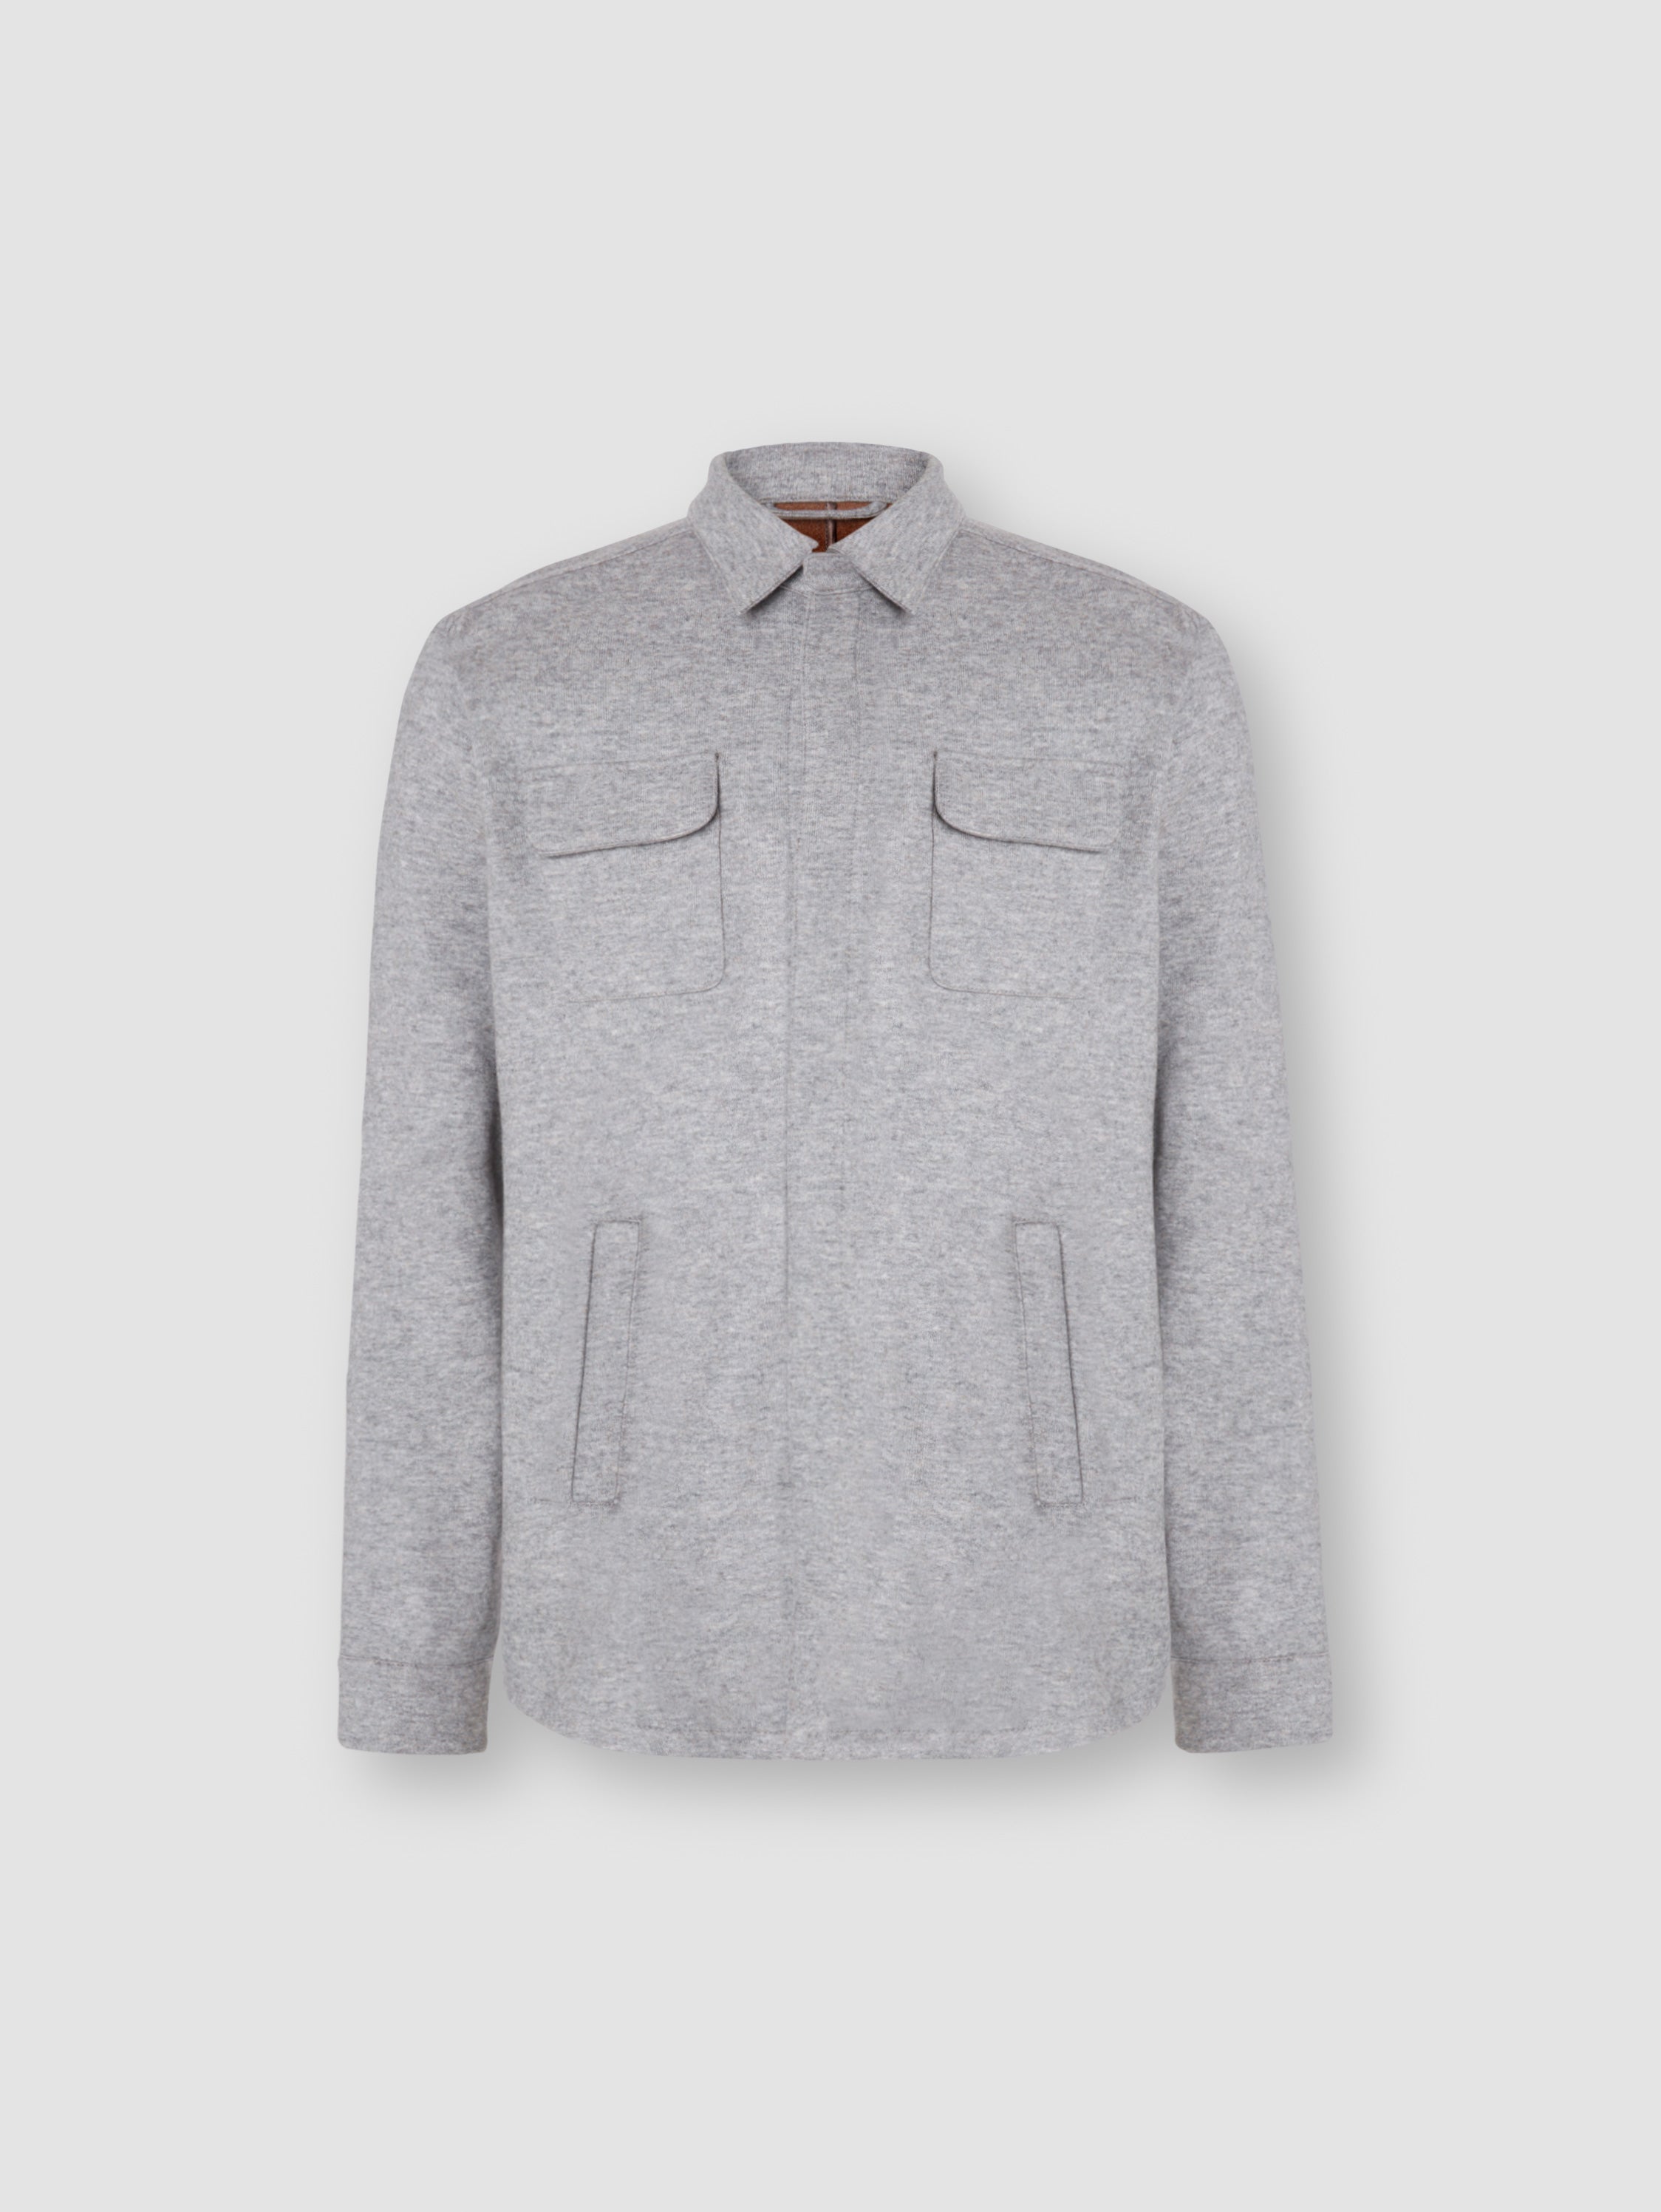 Double Cashmere Chore Jacket Grey Product Image